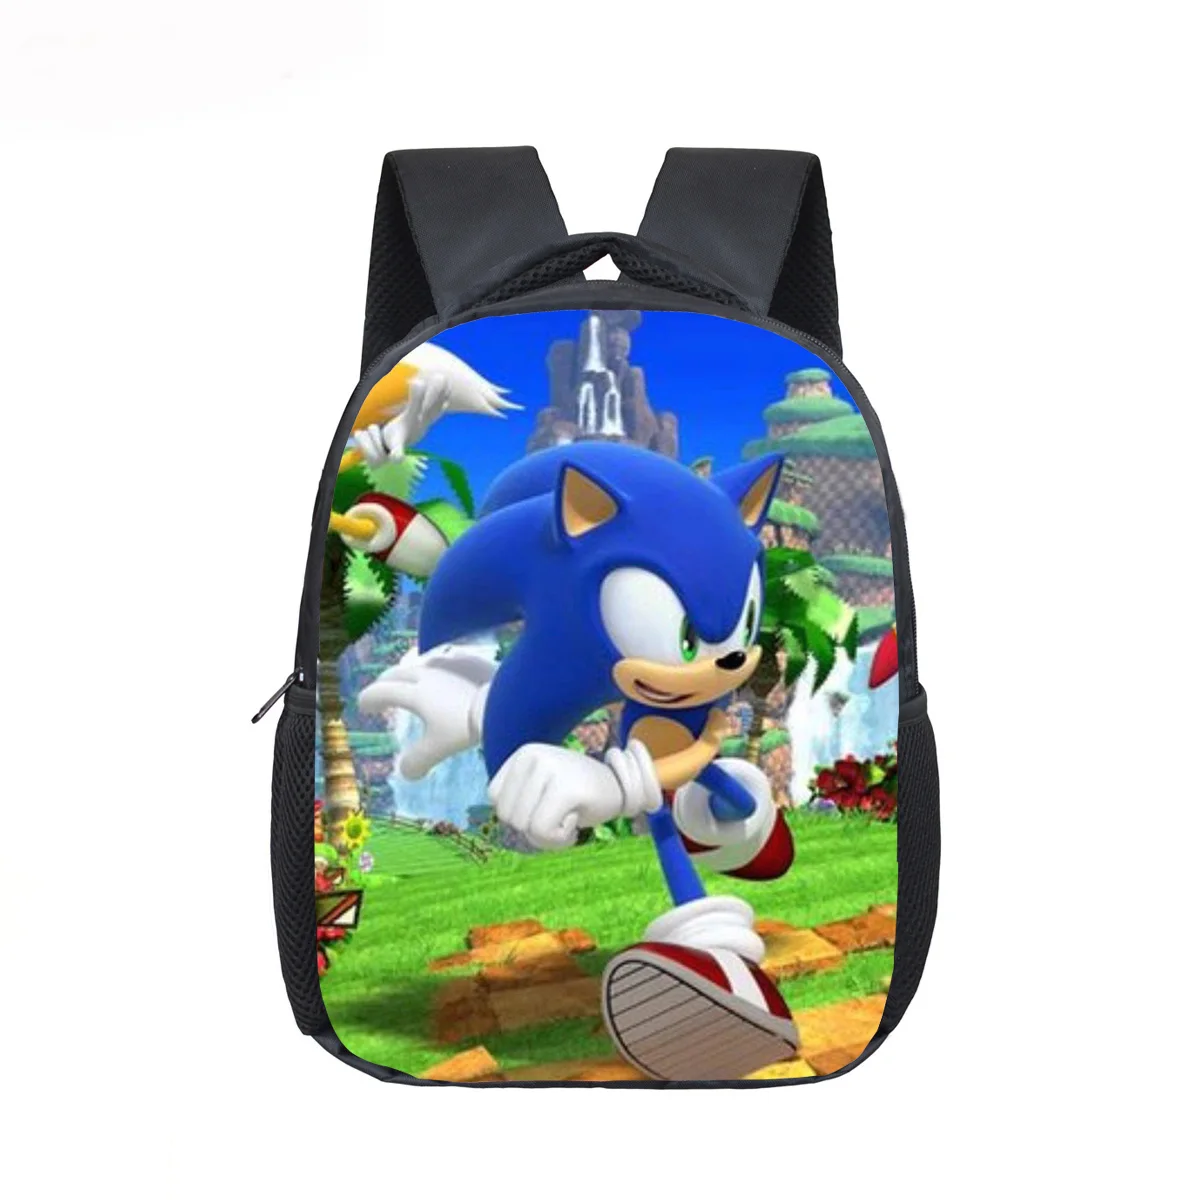 Горячая Распродажа, рюкзак Super Mario Bros Sonics, Детская сумка, красивая сумка с принтом Mario Sonic, сумка для детского сада - Цвет: 11